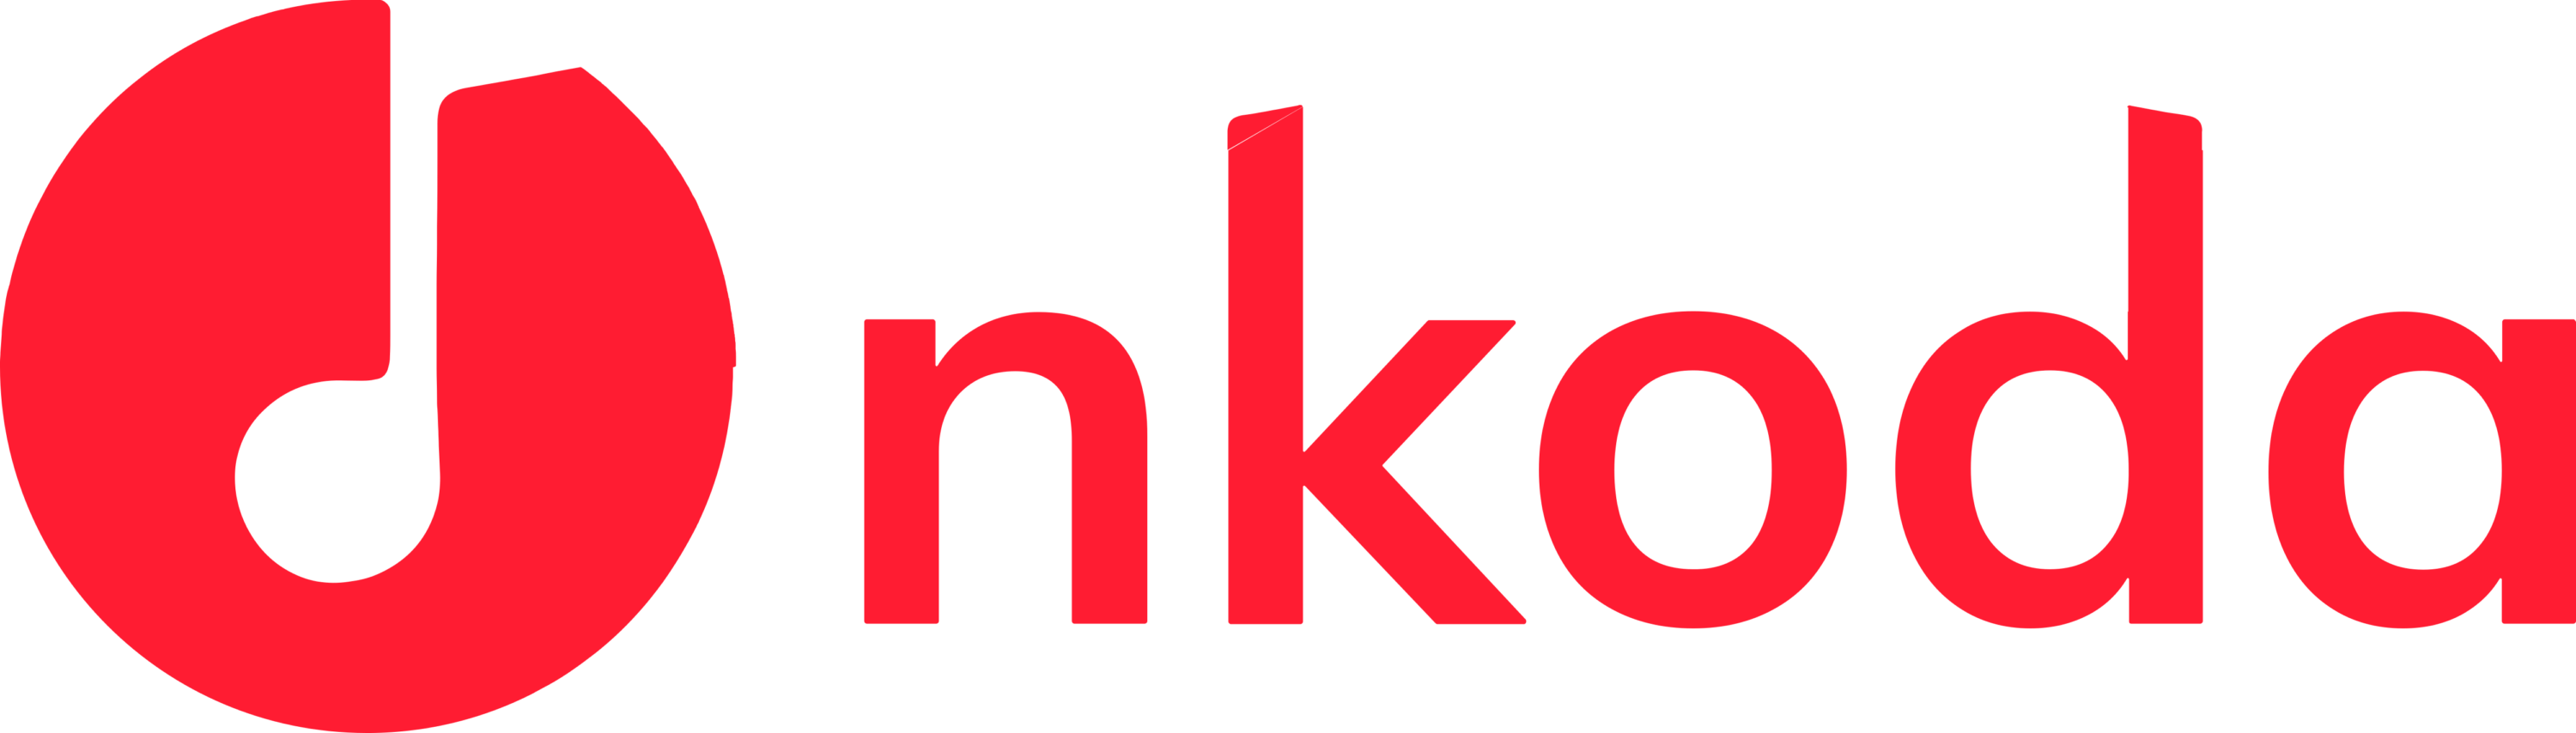 Nkoda Limited Logo